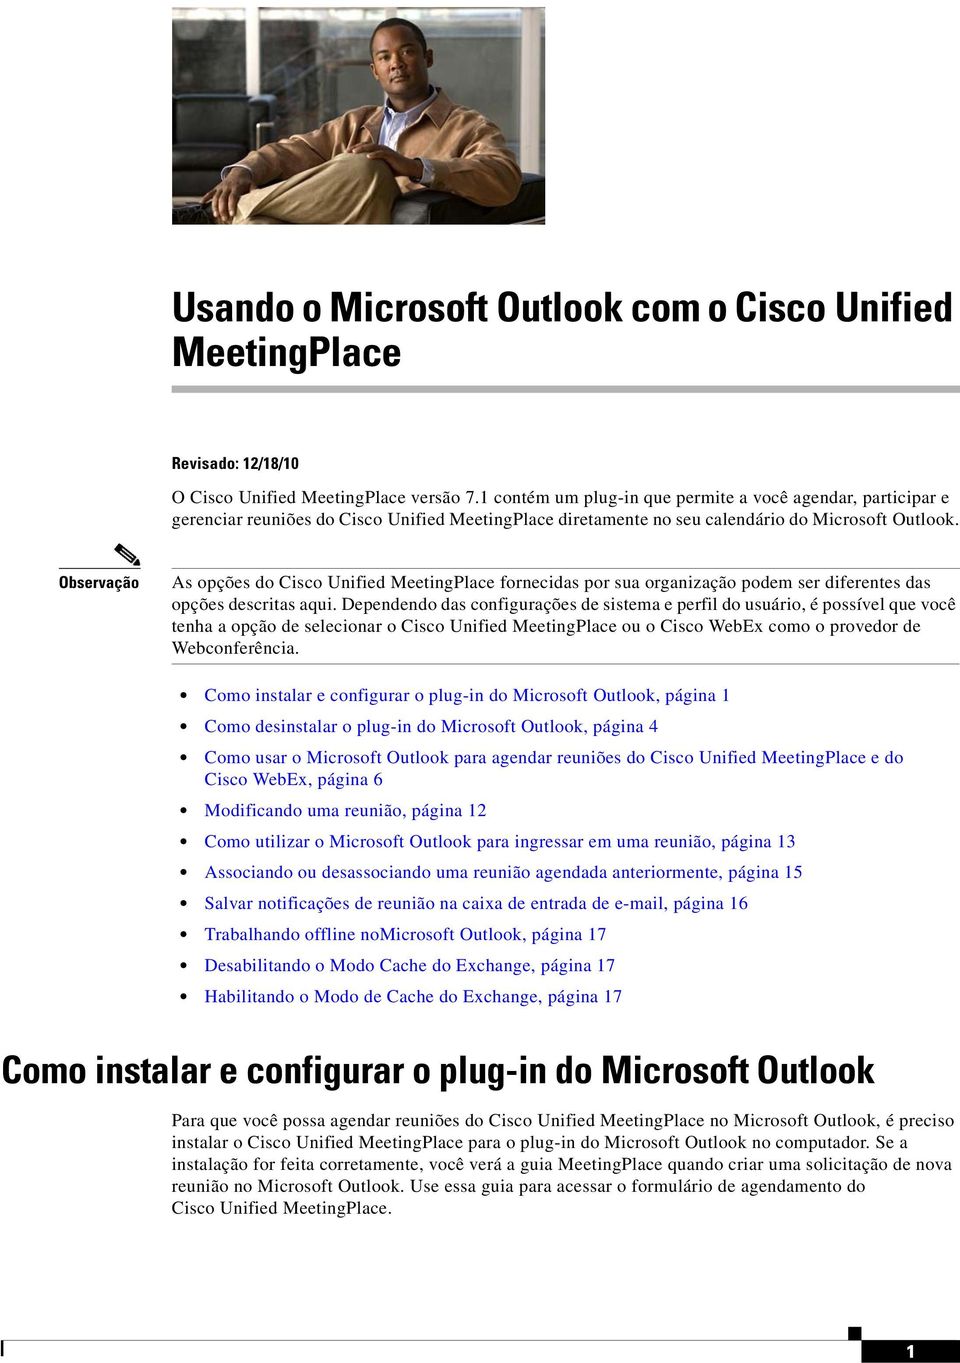 As opções do Cisco Unified MeetingPlace fornecidas por sua organização podem ser diferentes das opções descritas aqui.